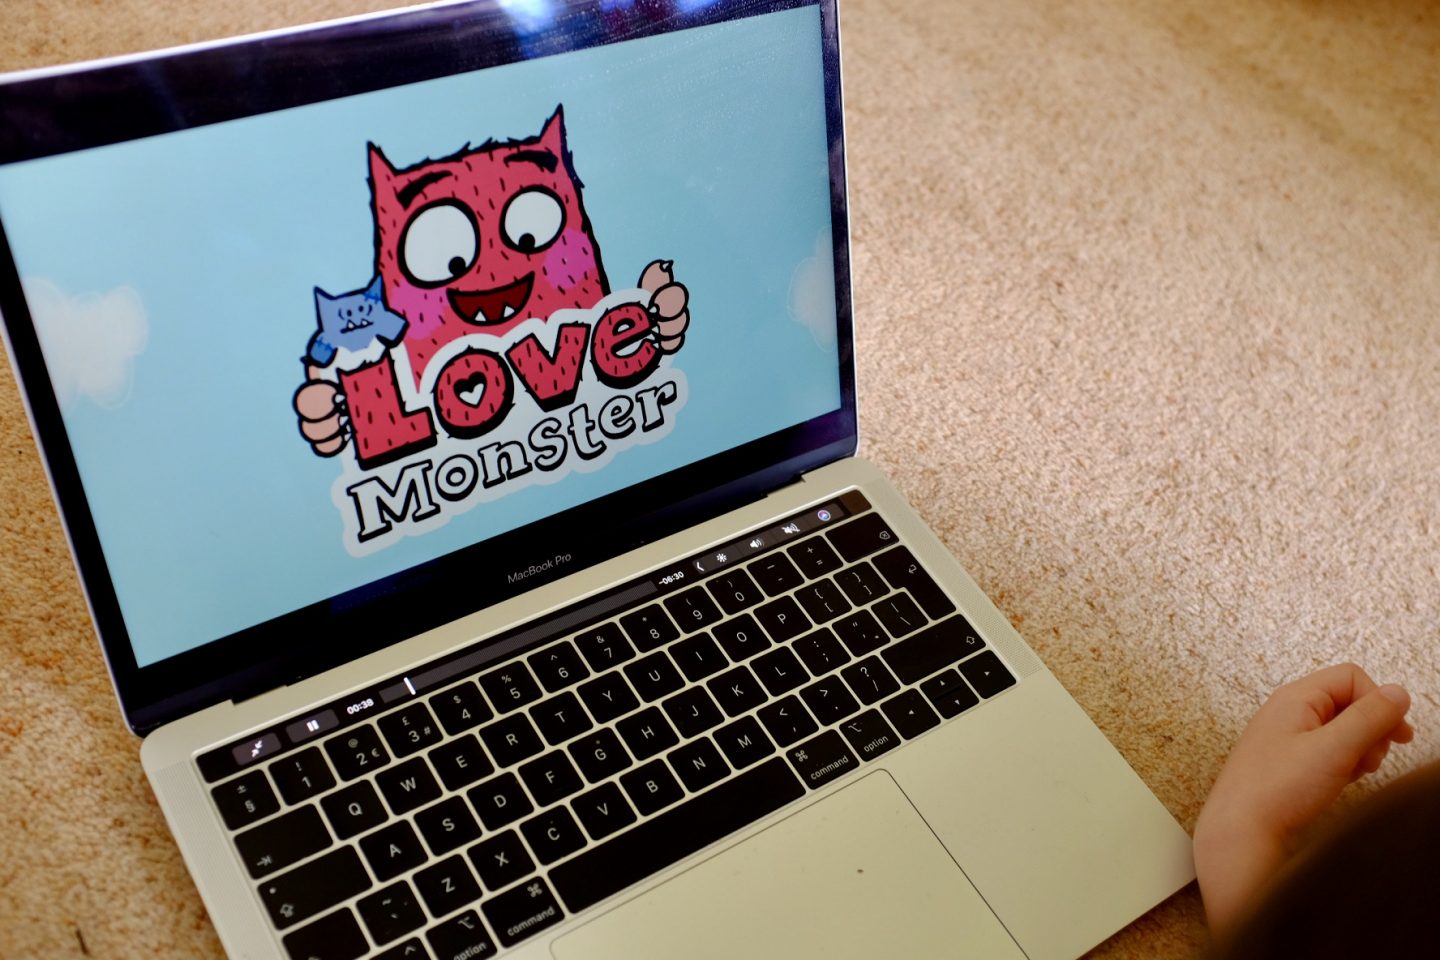 Love Monster TV show